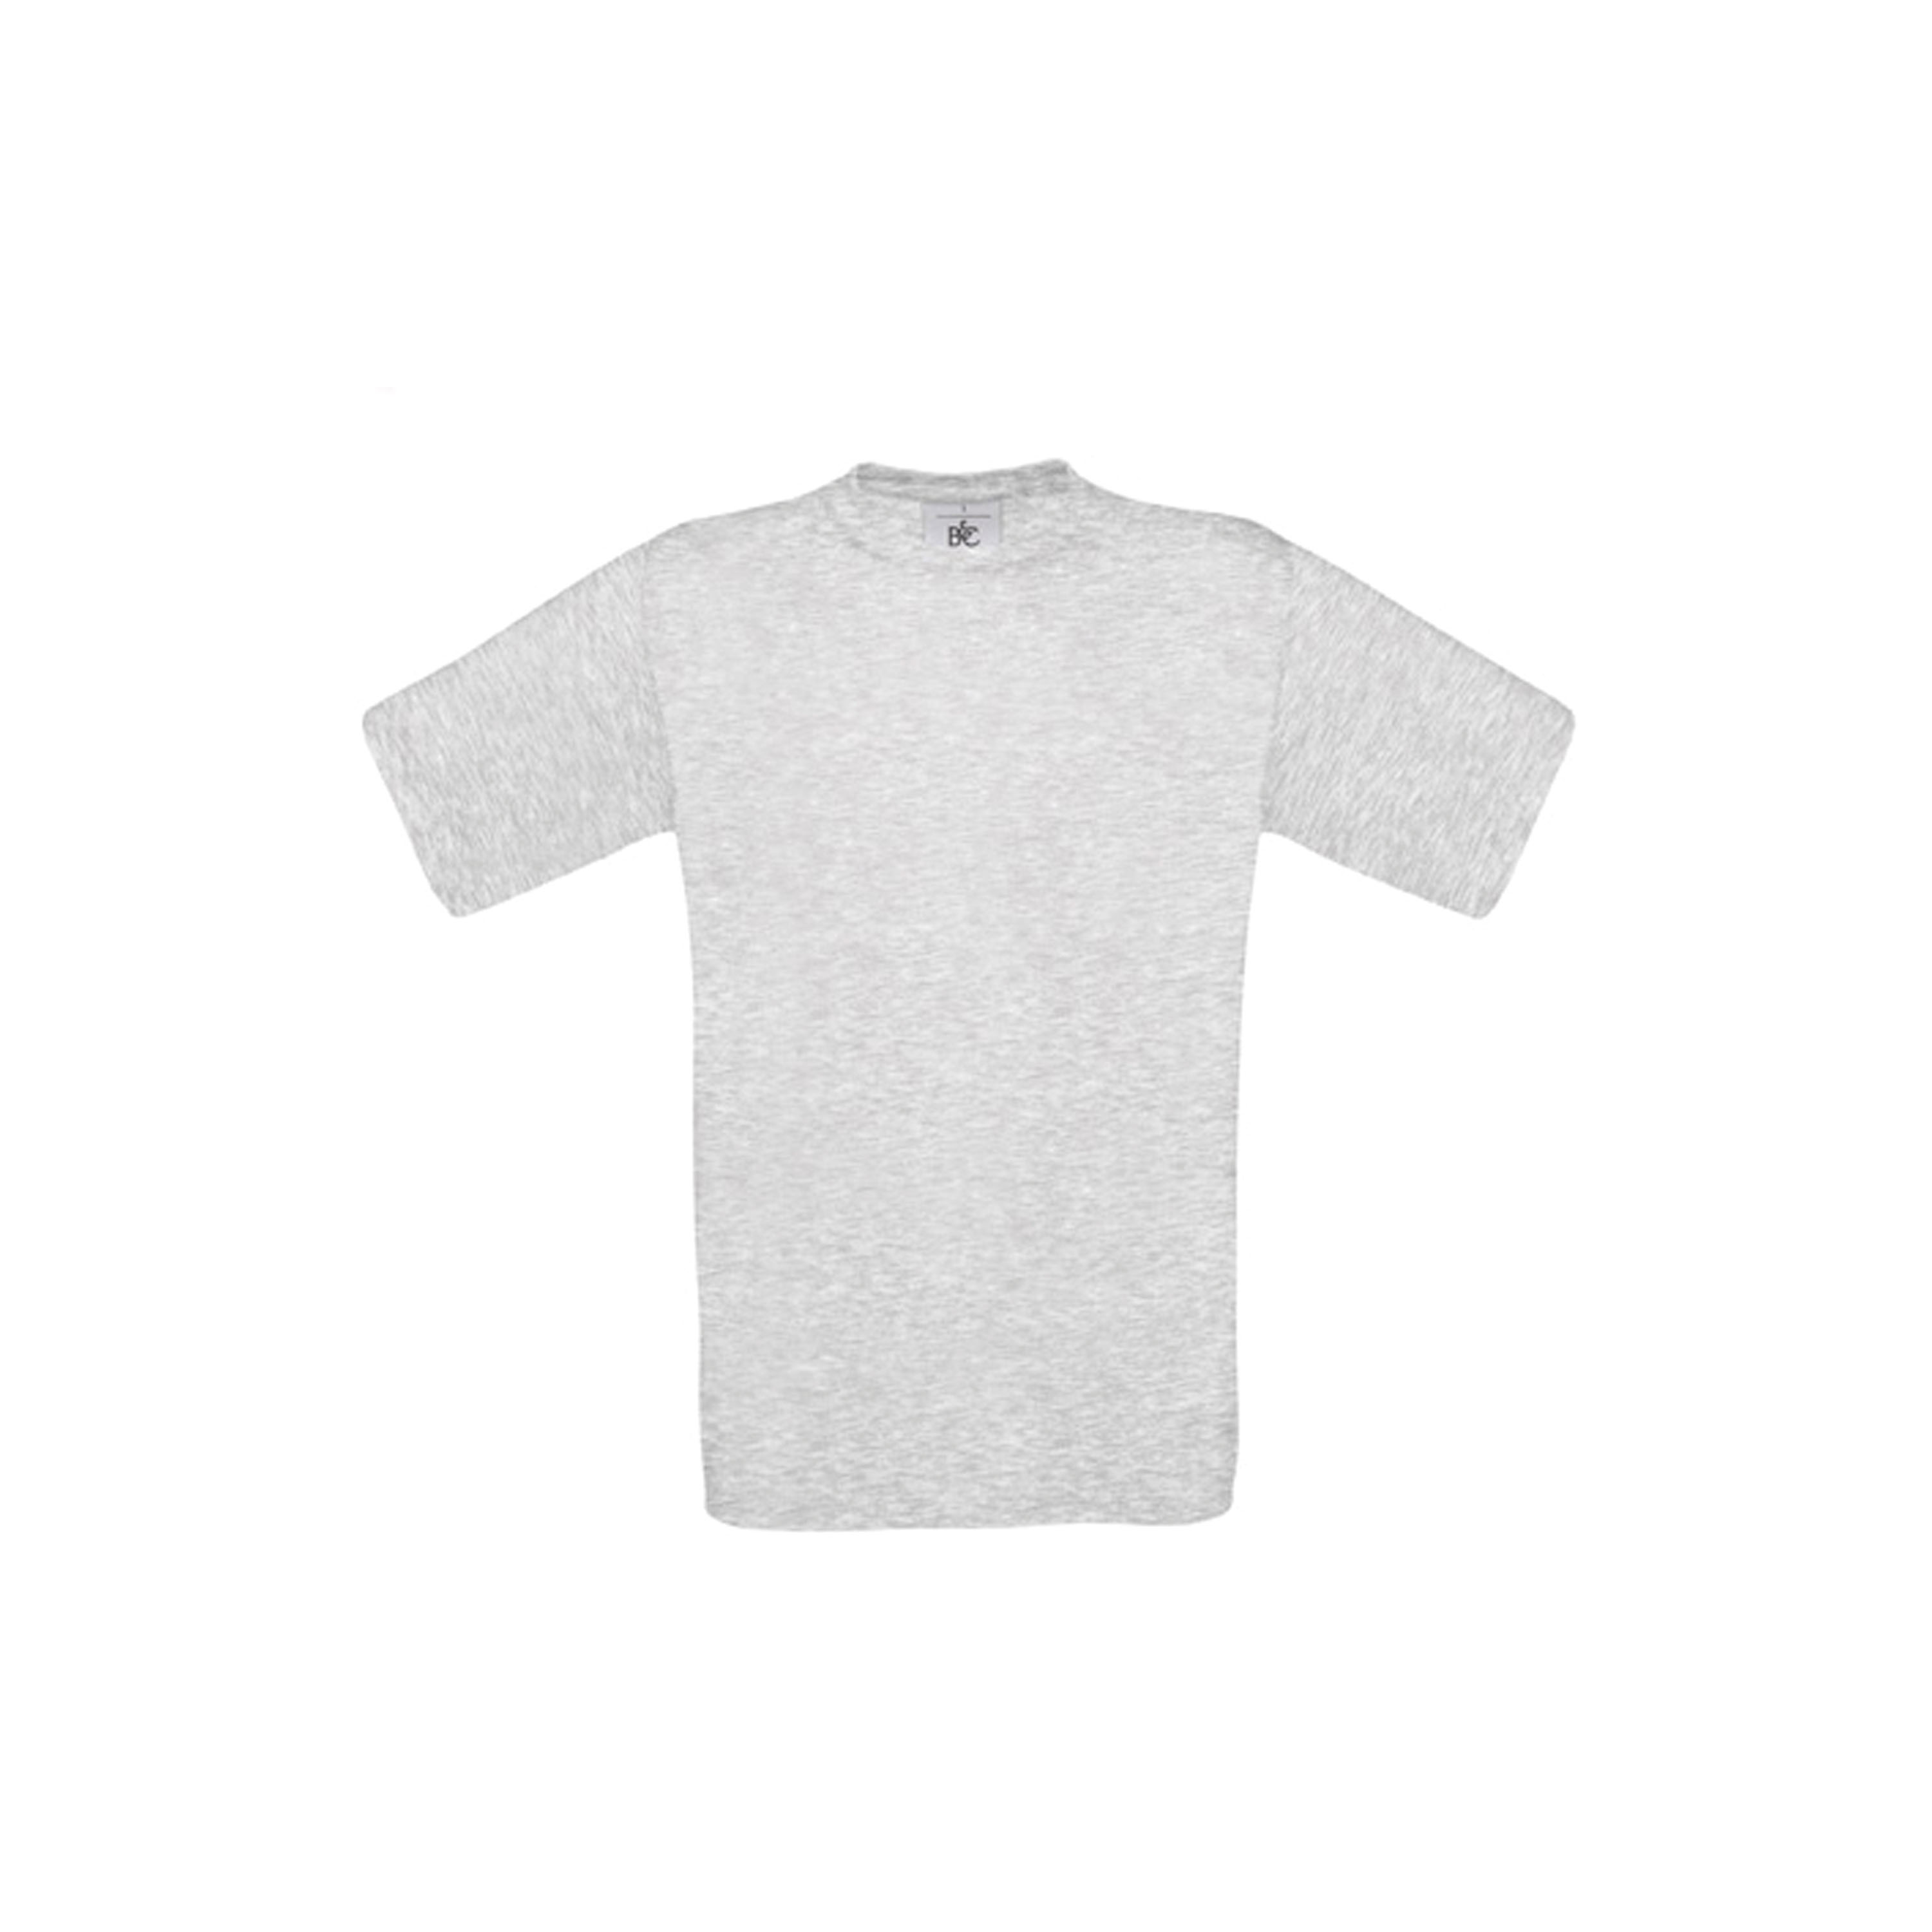 Flocage Personnalisé avec votre Texte - Marquage Tee Shirt avec Flocage